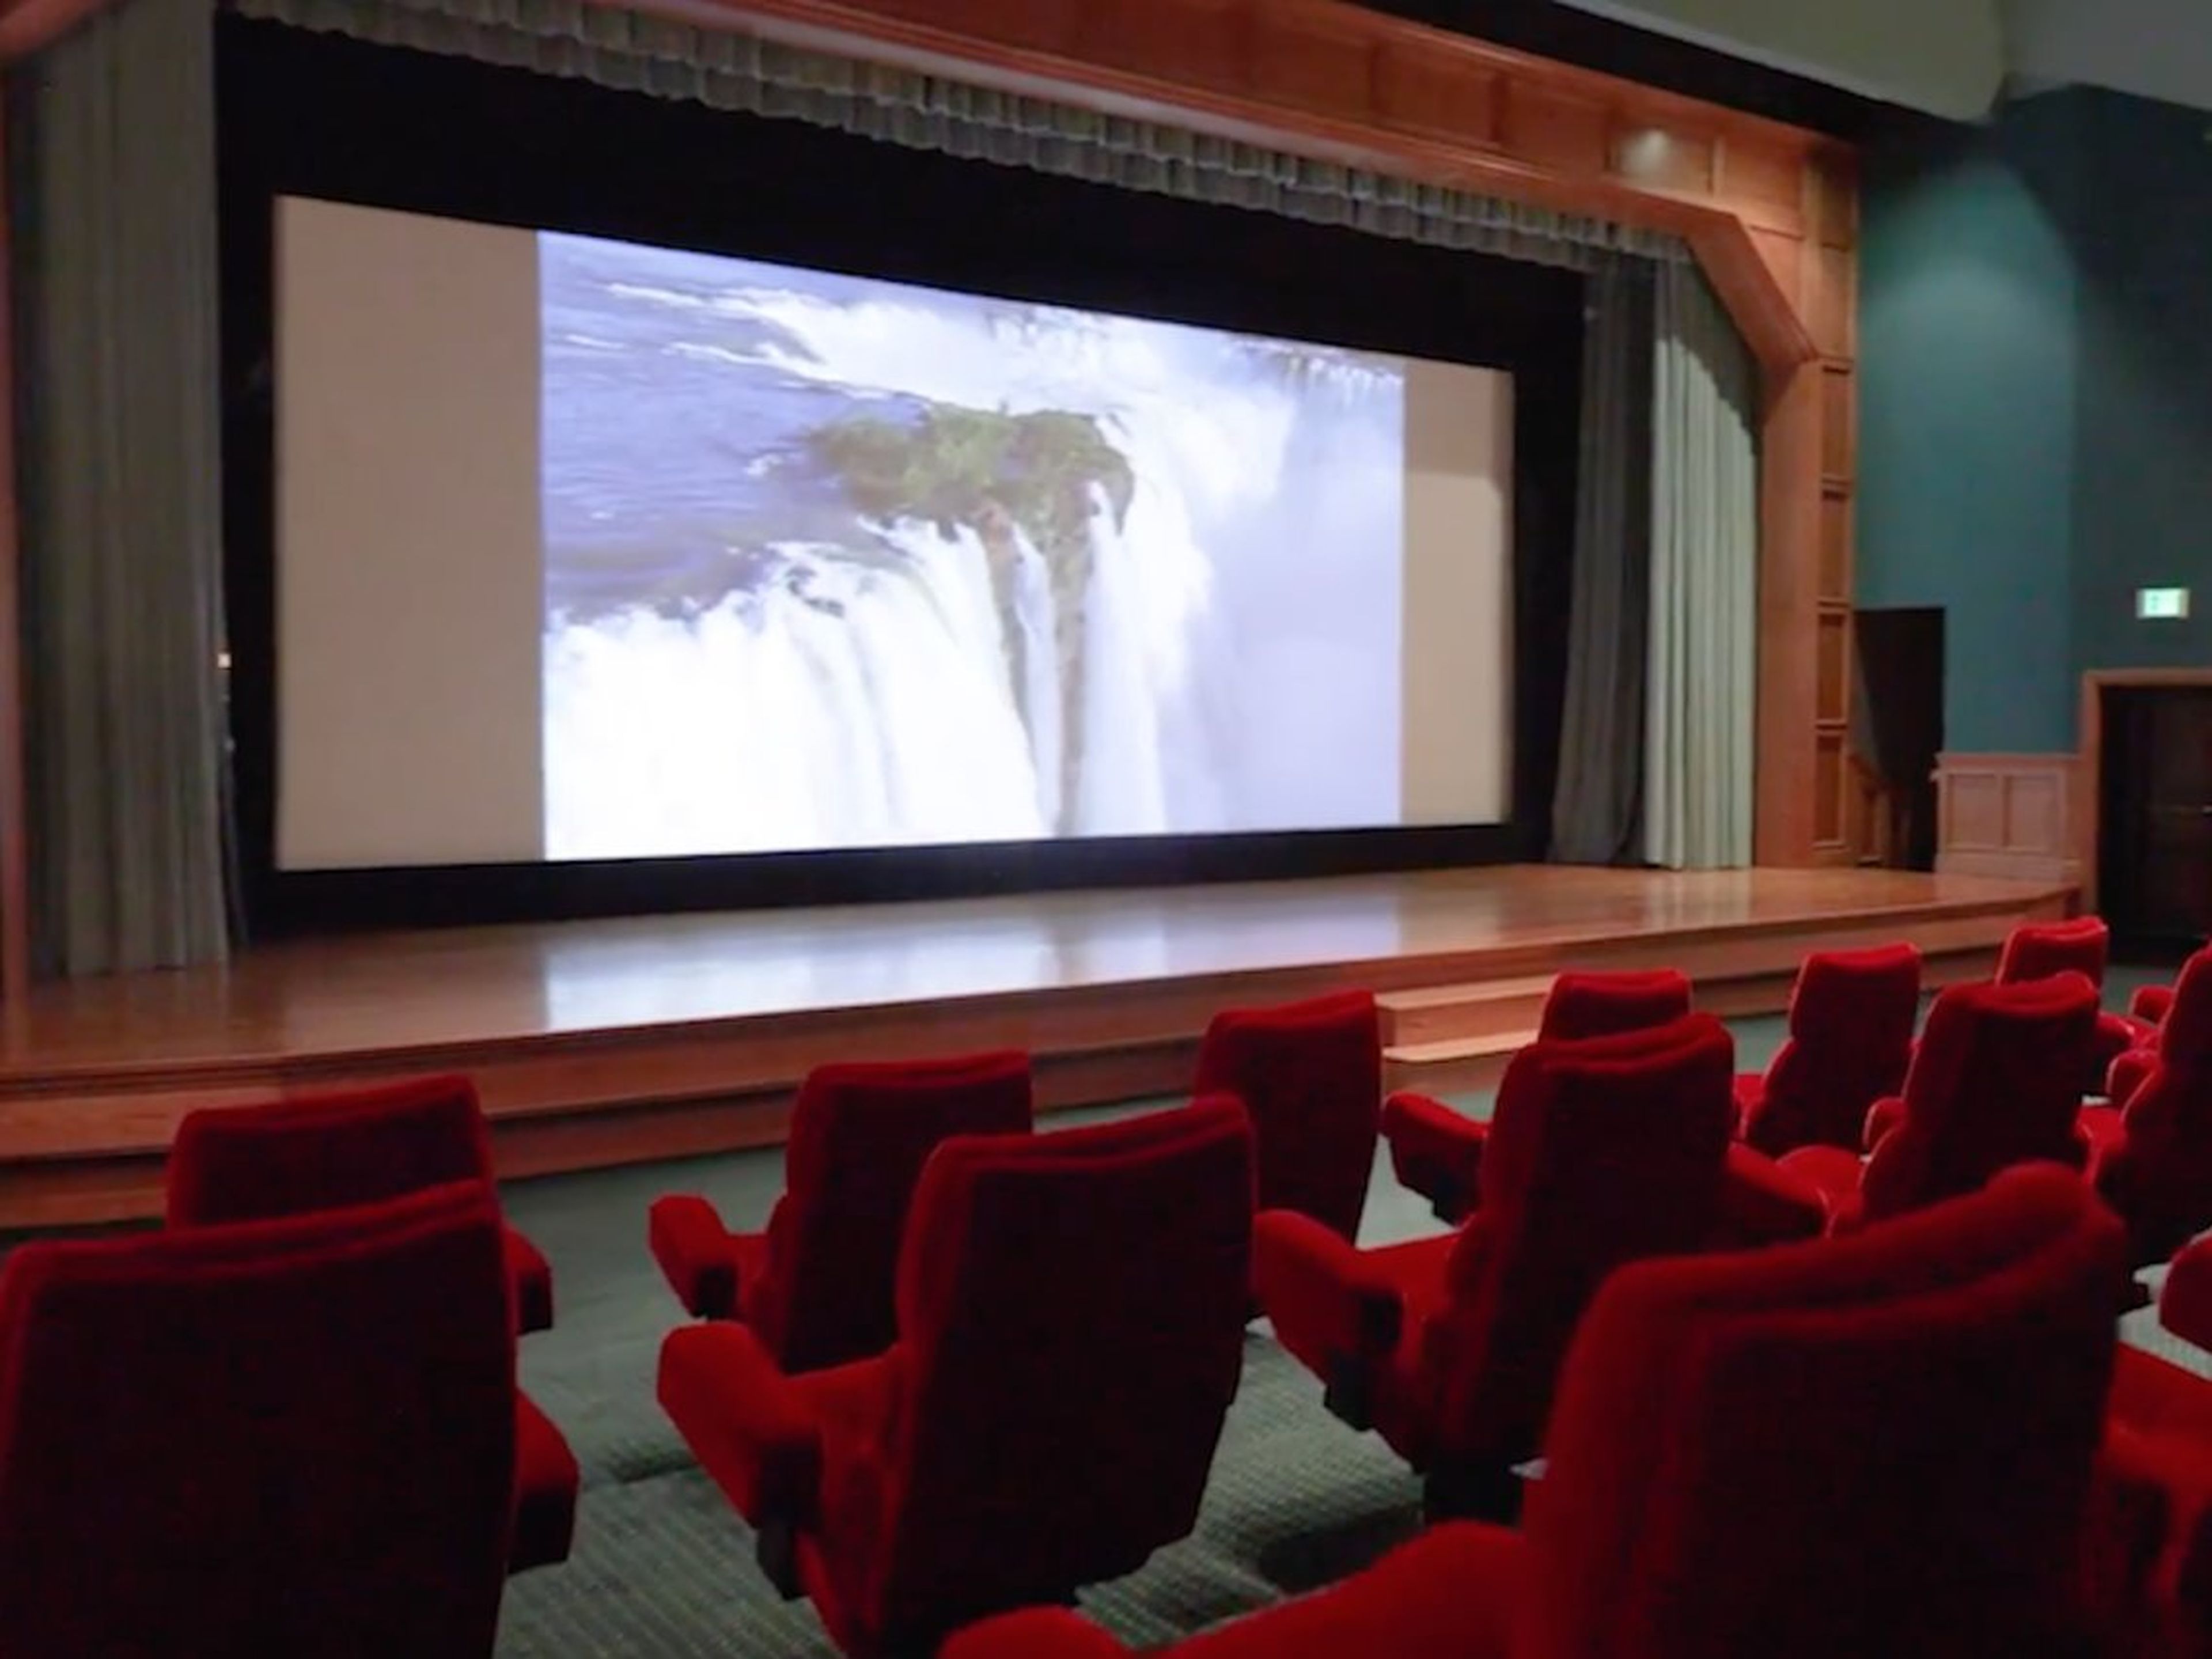 El cine de 50 asientos tiene sistema de proyección y sonido de nivel de teatro, un balcón de observación privado y un escenario con puertas trampa